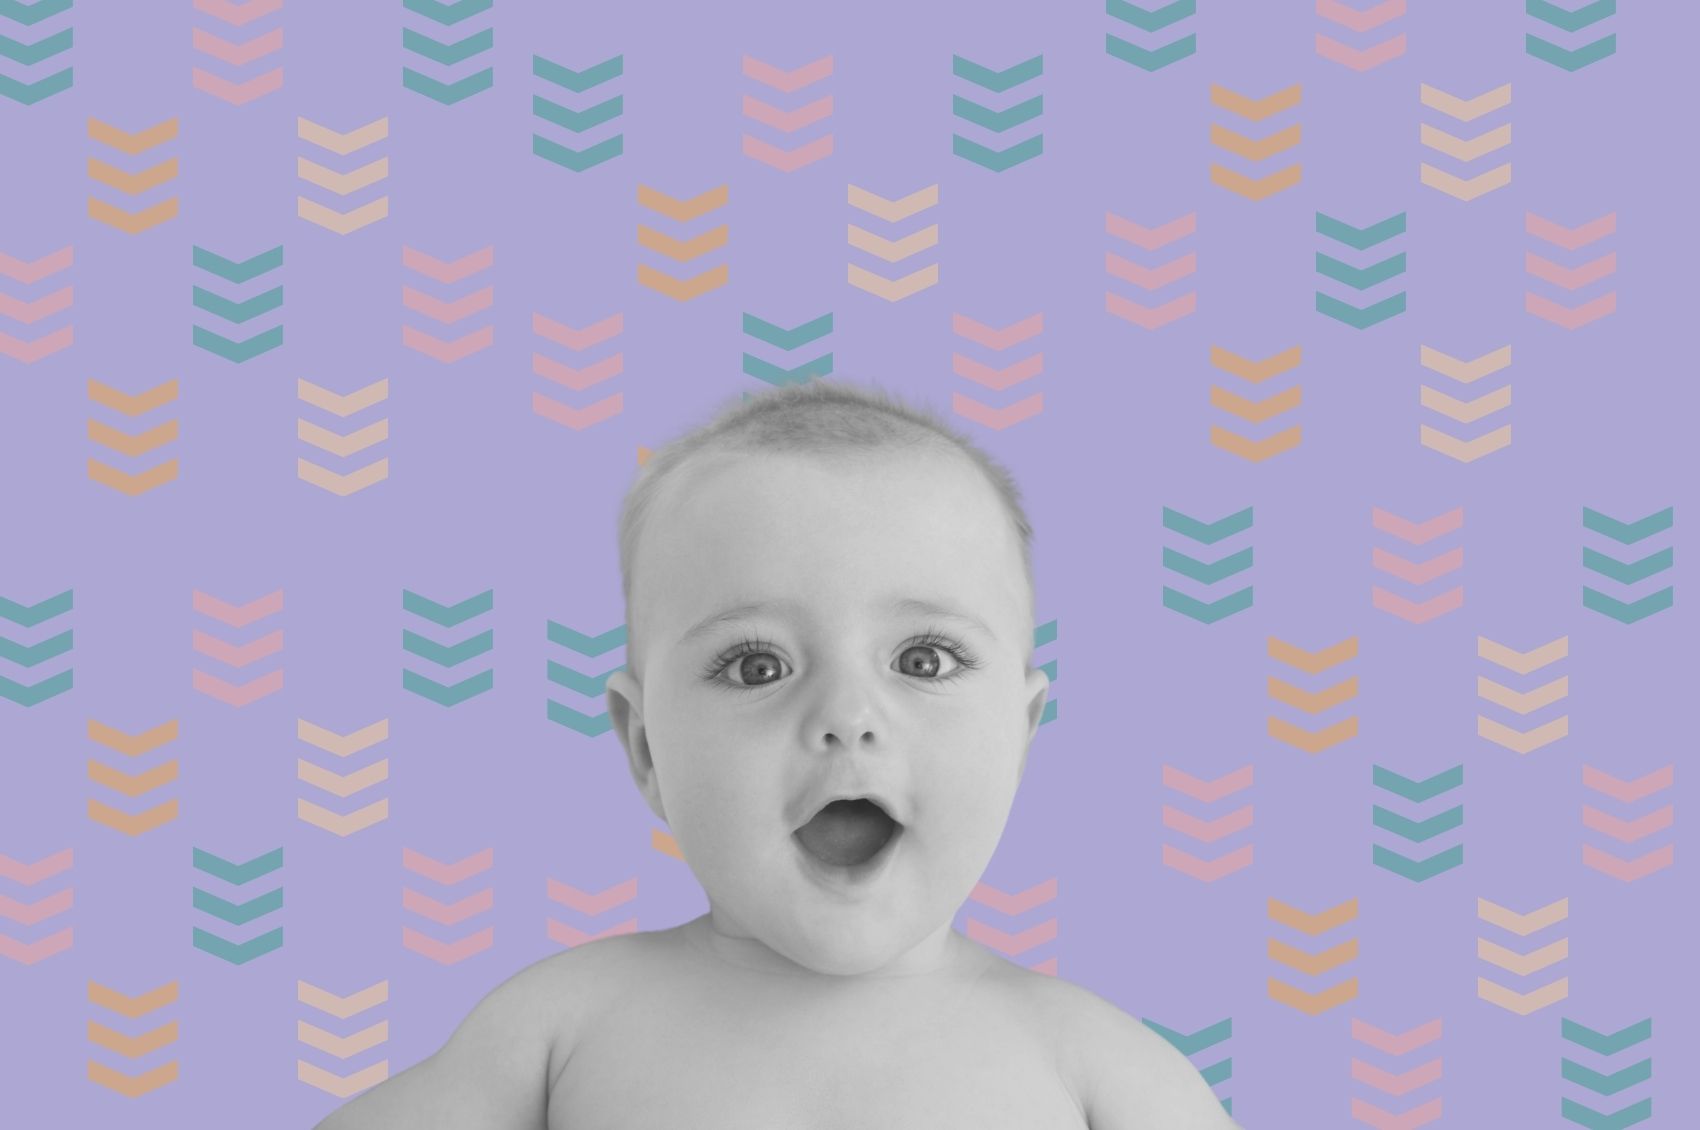 Bebê em preto e branco sob fundo de setas coloridas